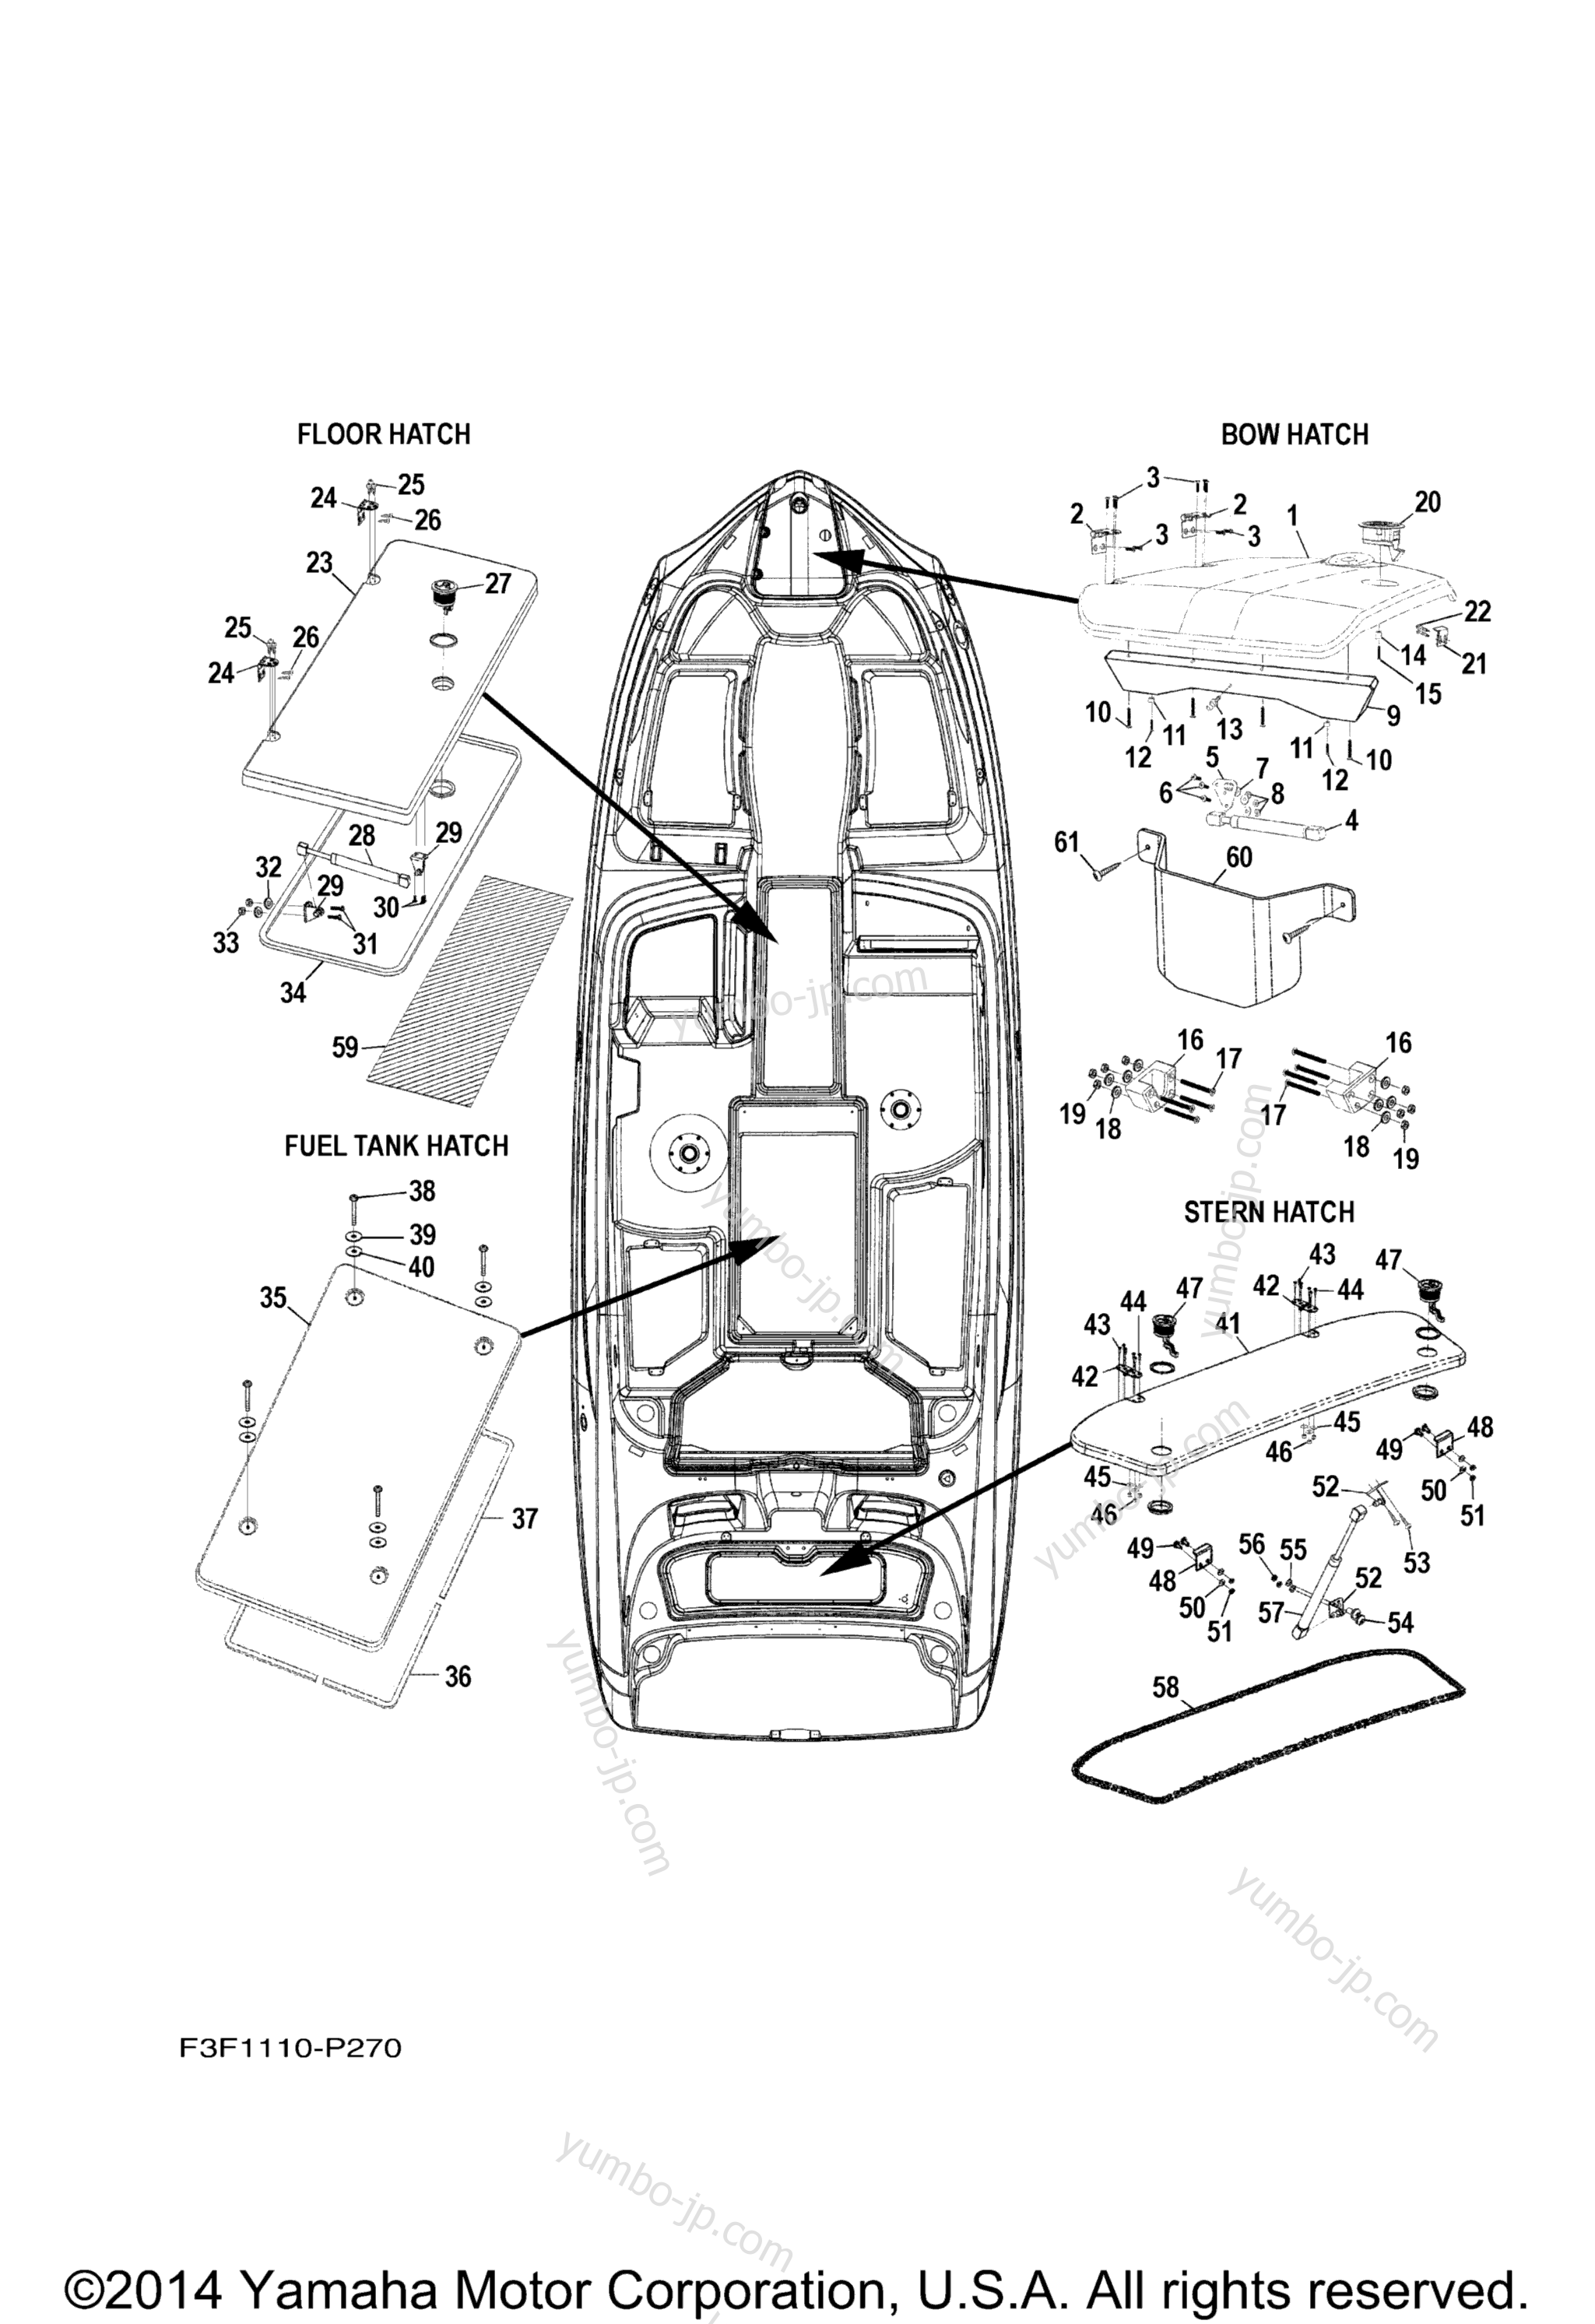 Deck Hatch 1 для катеров YAMAHA 242 LIMITED S (SAT1800GP) 2015 г.